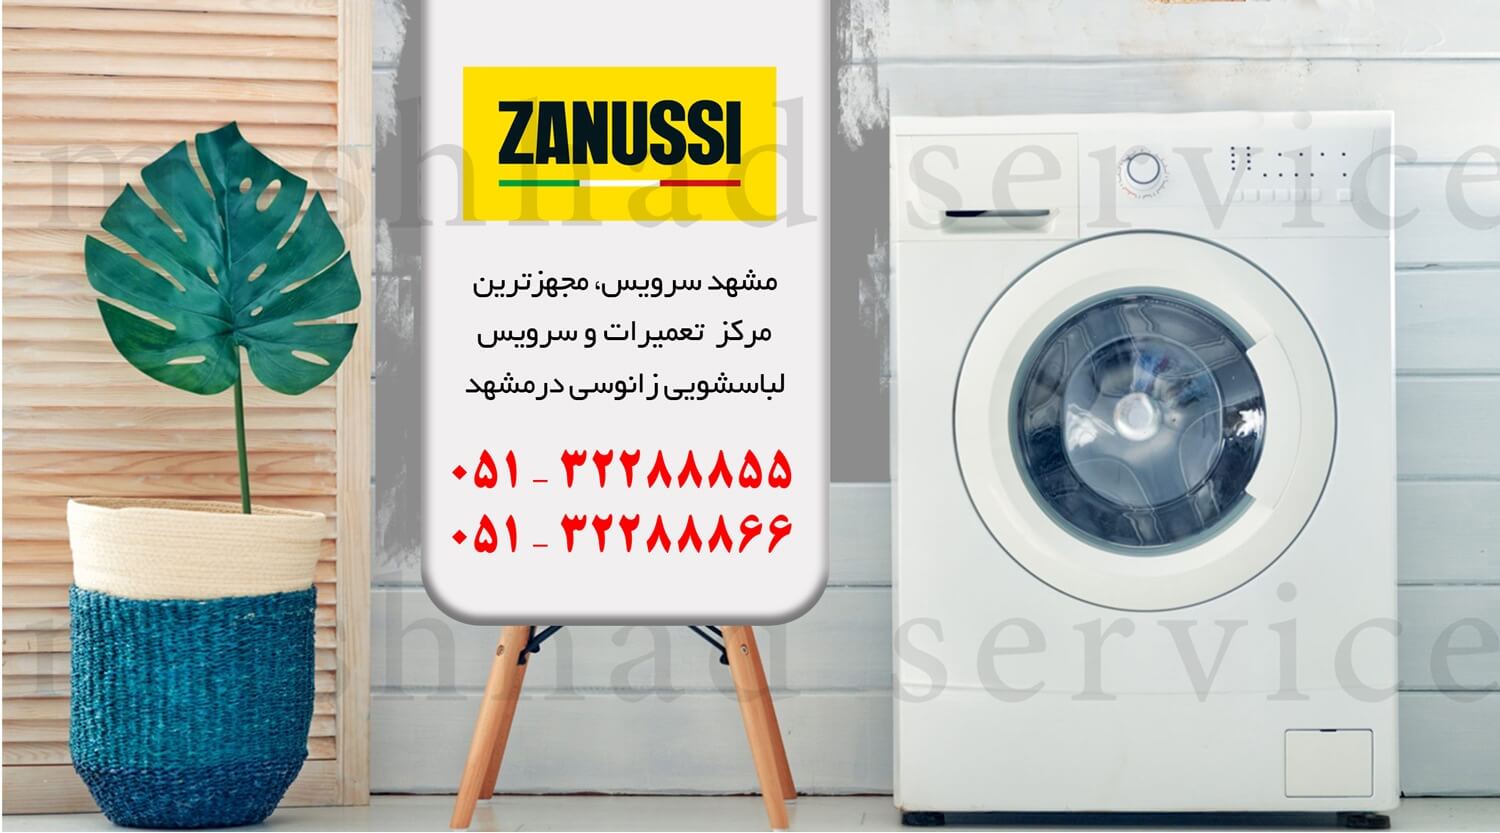 10 دلیل انتخاب مرکز تخصصی تعمیر ماشین لباسشویی زانوسی در مشهد